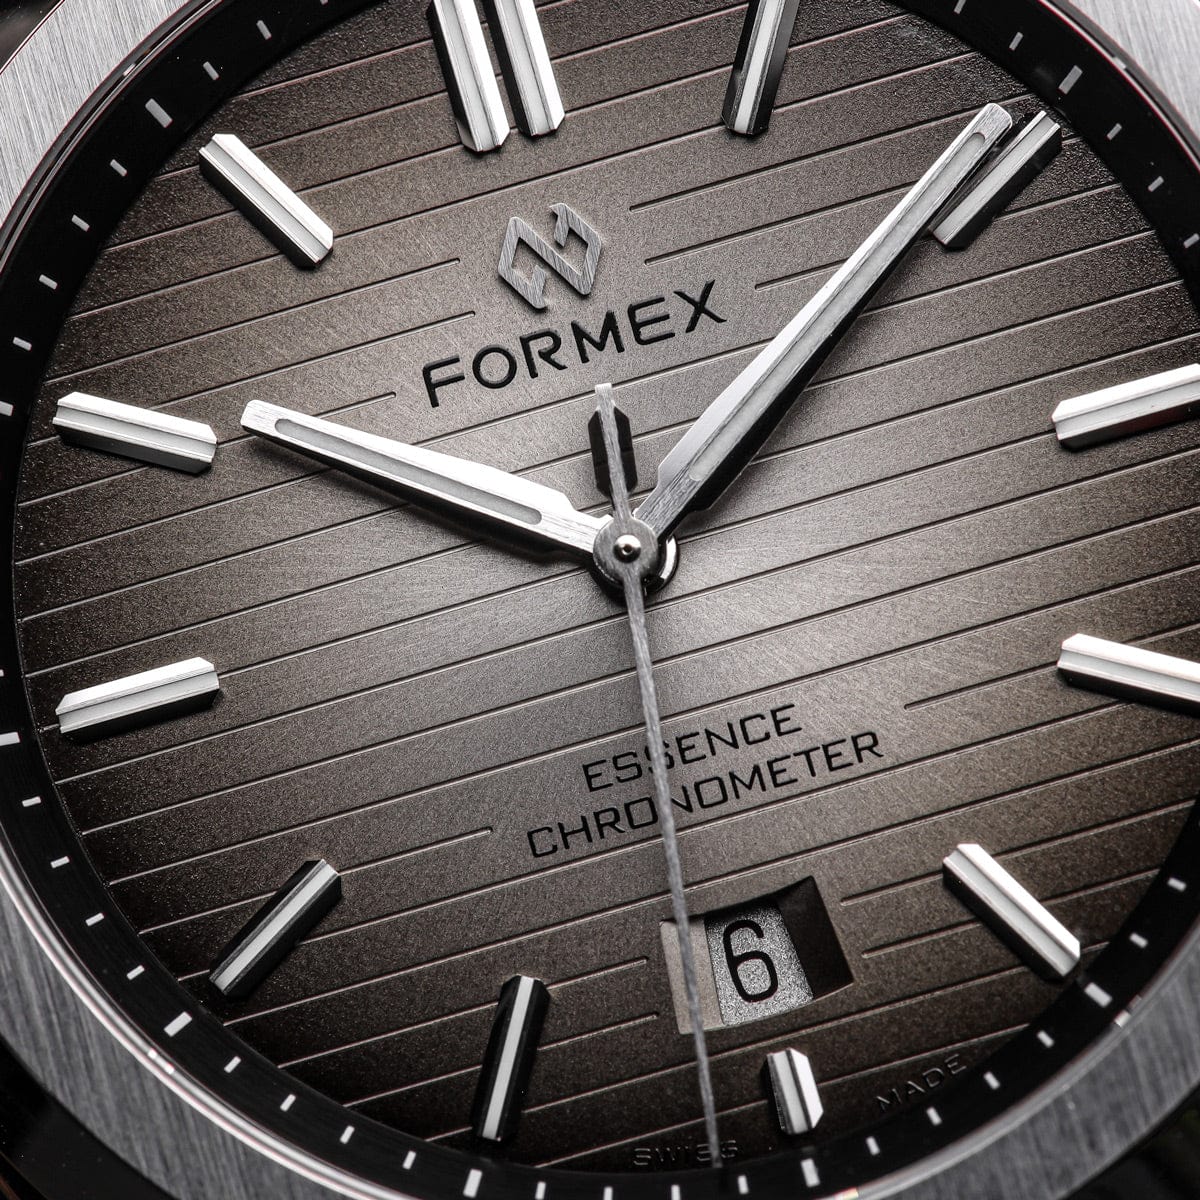 Formex Essence 43 Automatic Chronometer - Dégradé Grey 